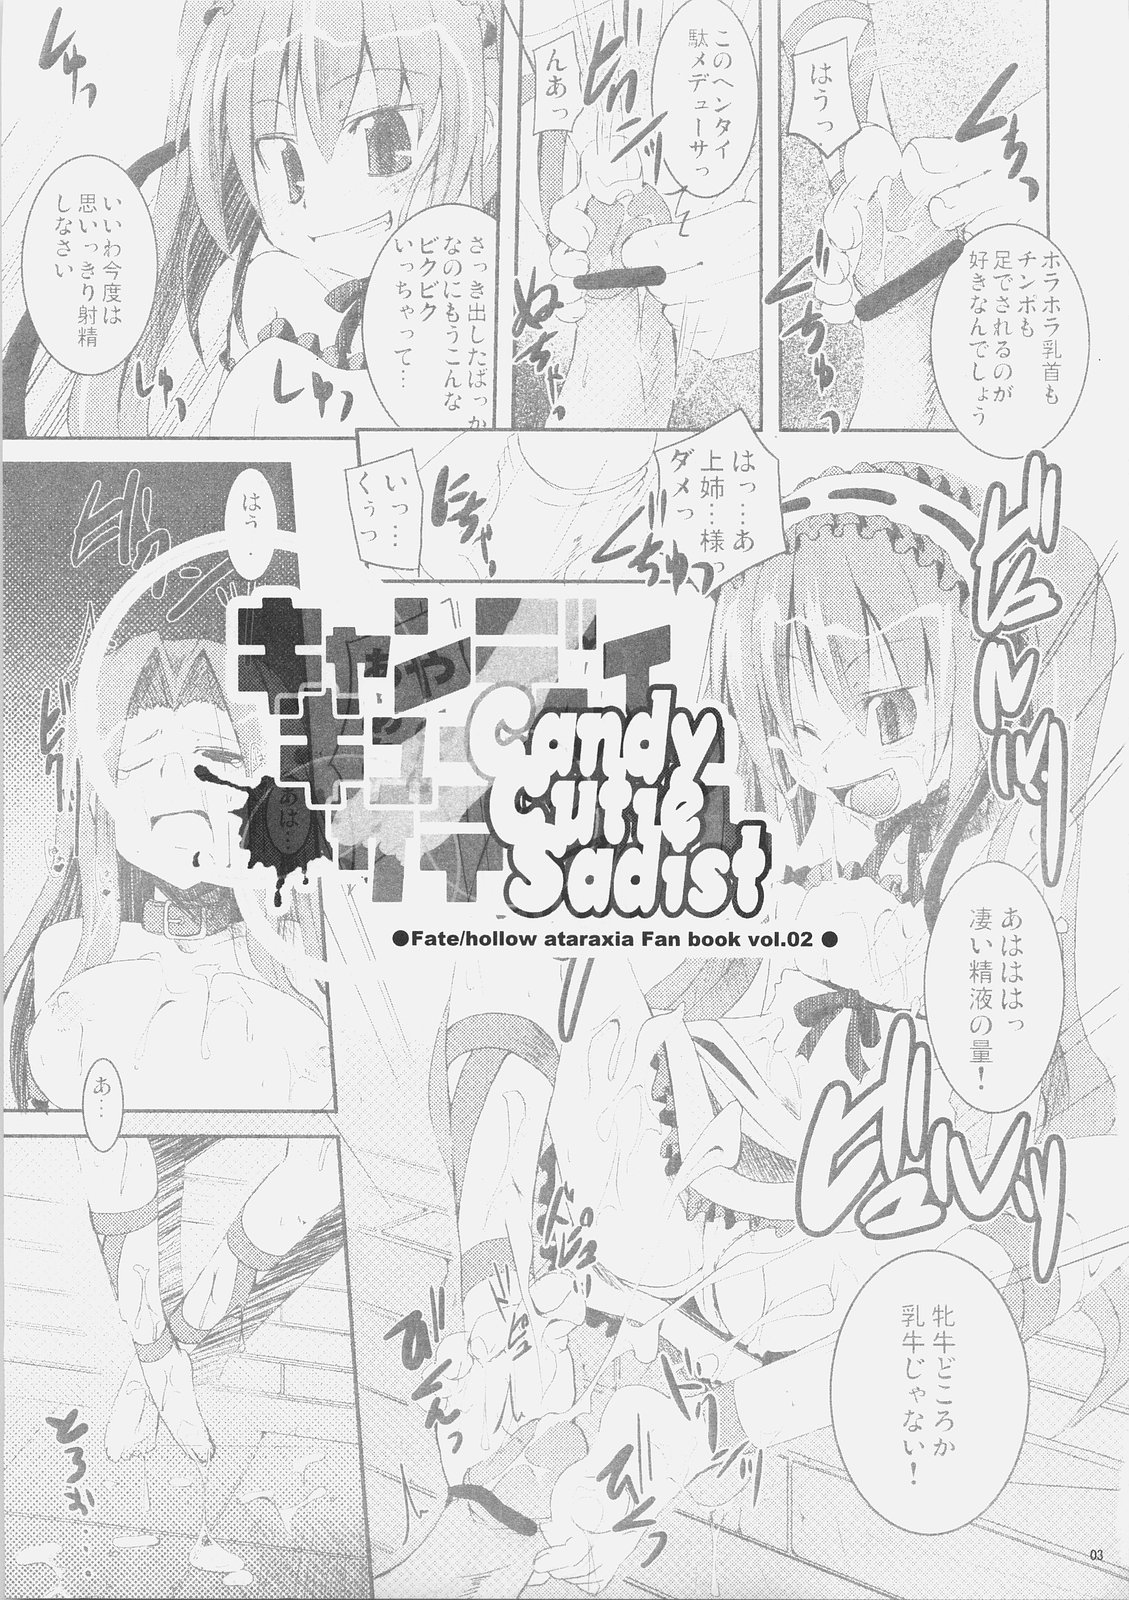 (SC32) [MASULAO MAXIMUM (Kazekawa Nagi)] Candy cutie sadist (Fate/stay night) page 2 full